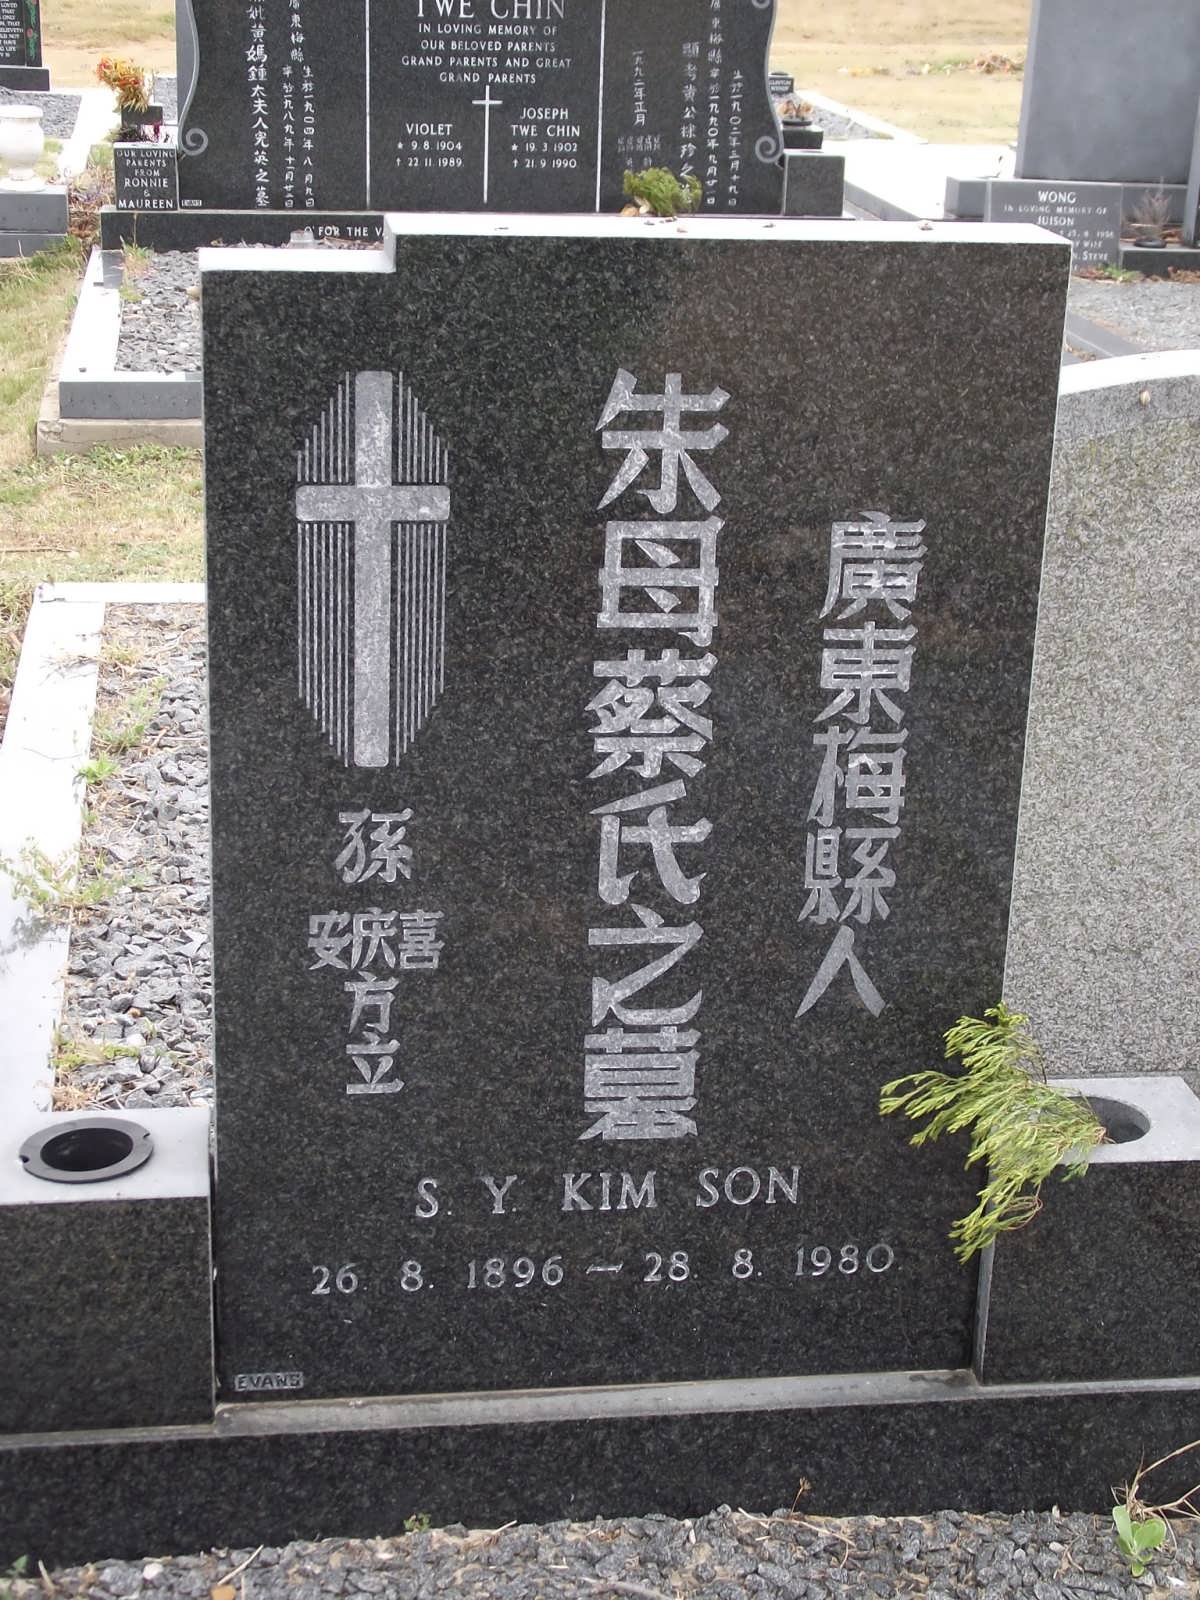 KIM SON S.Y. 1896-1980